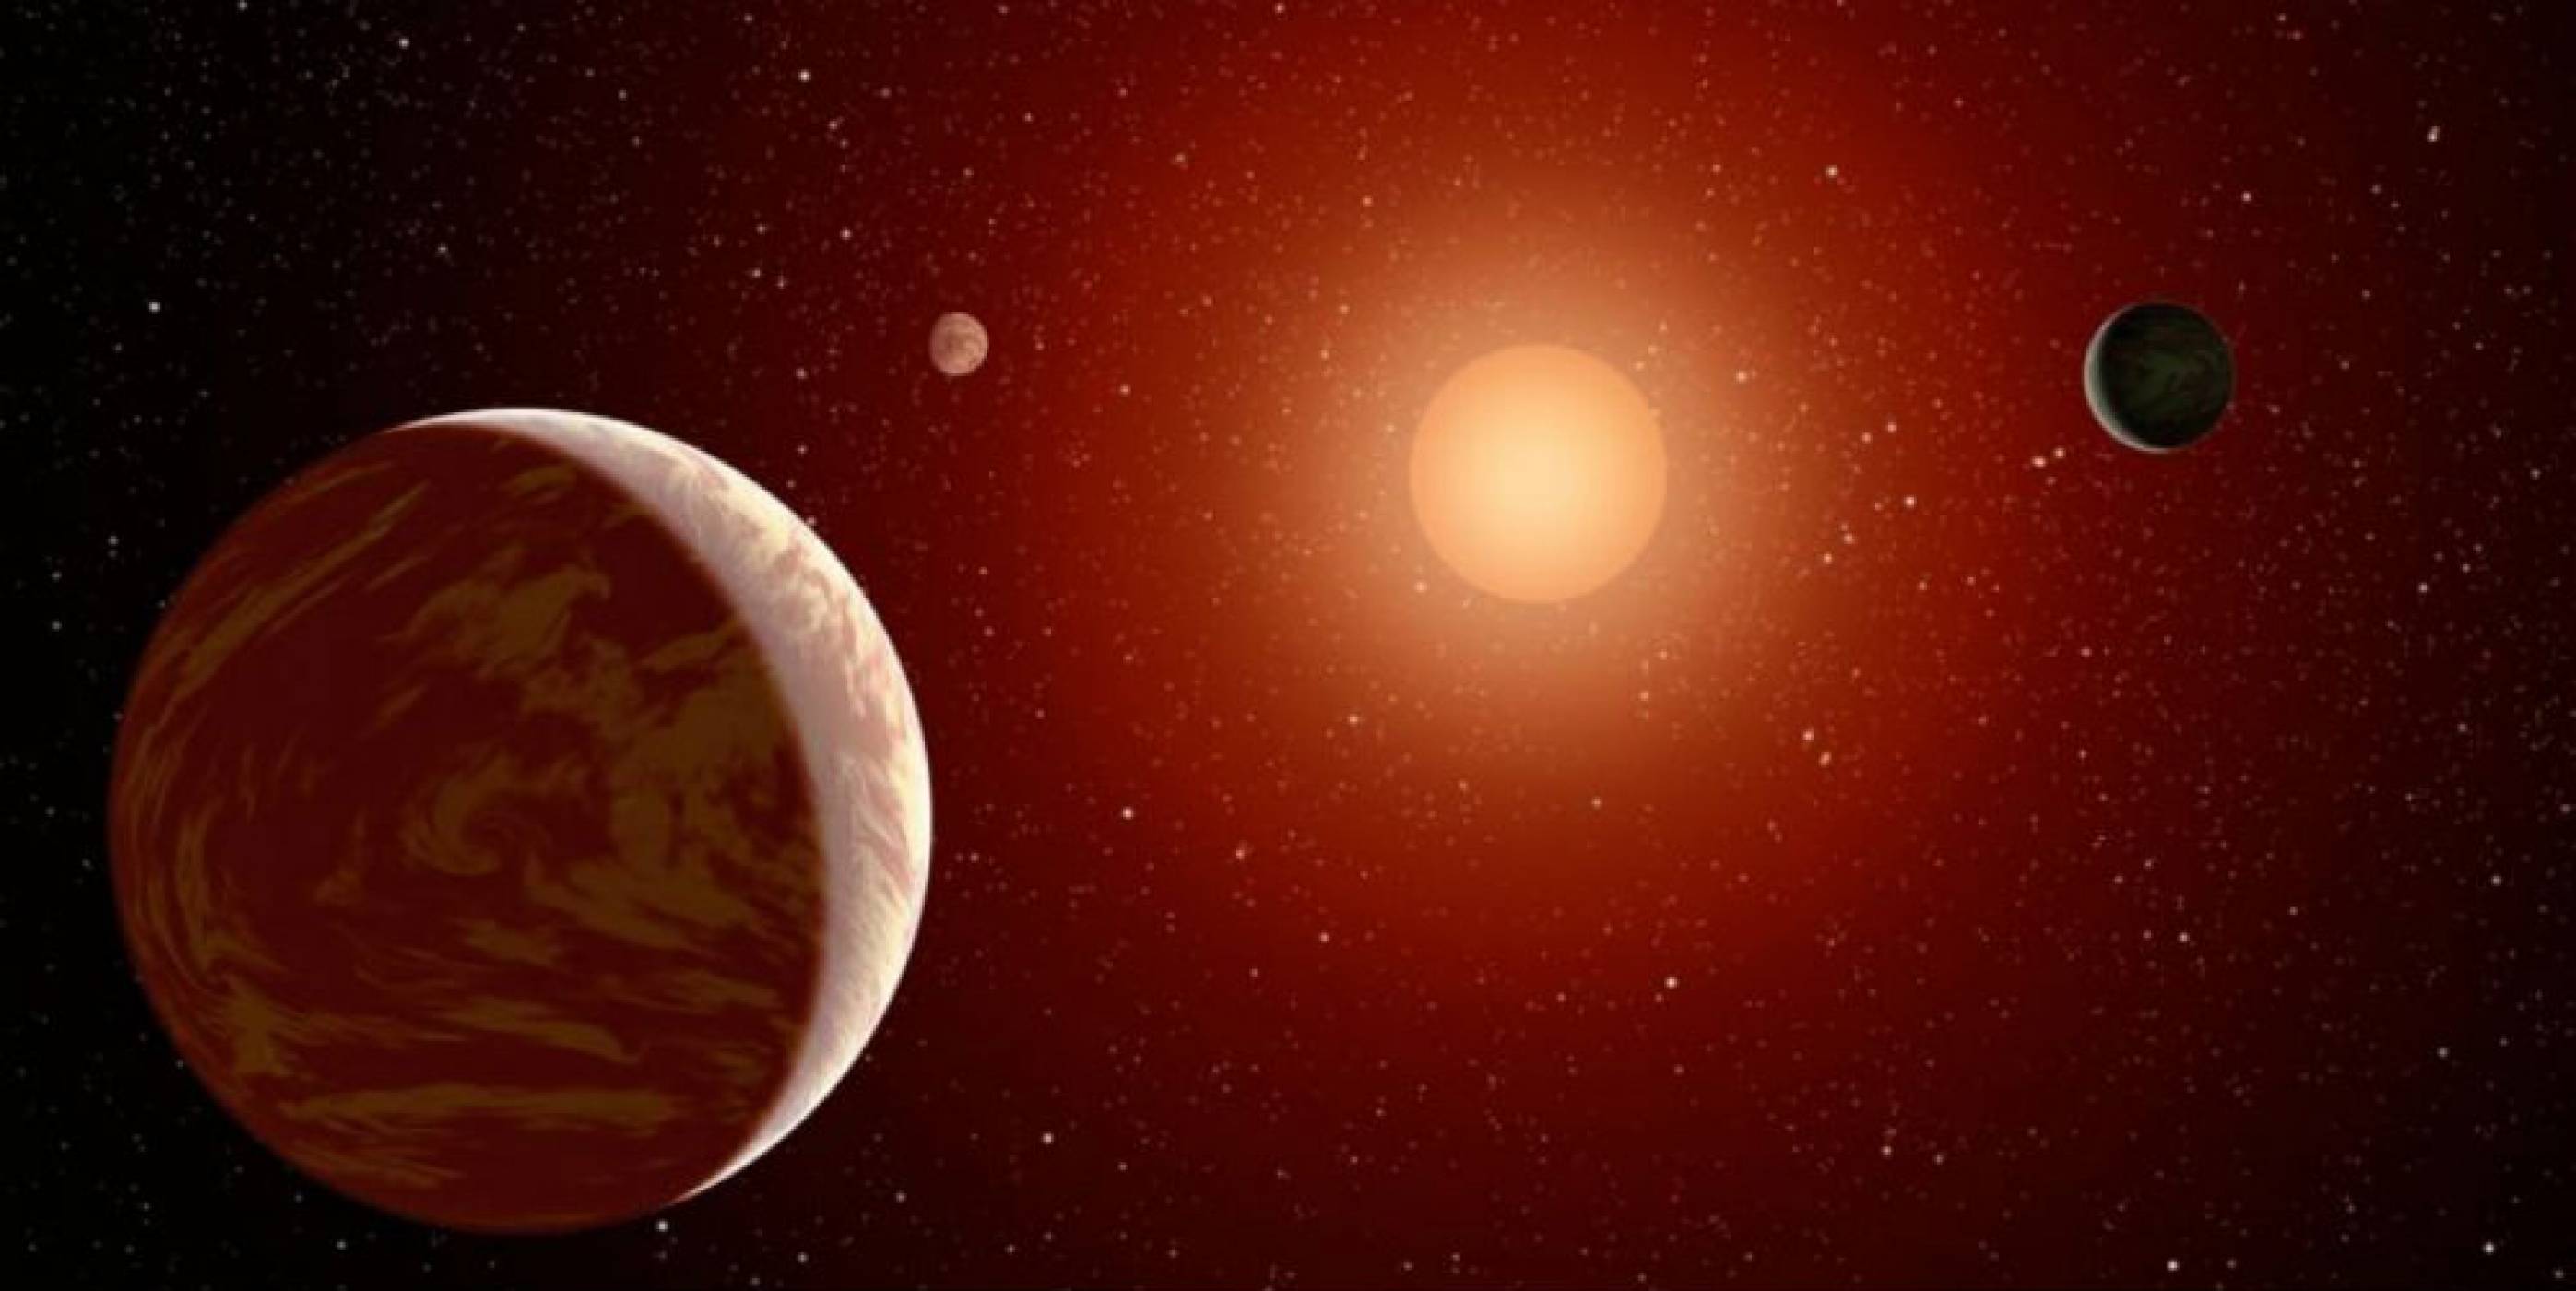 Откриха планета, на която годината продължава само 4 часа и 20 минути